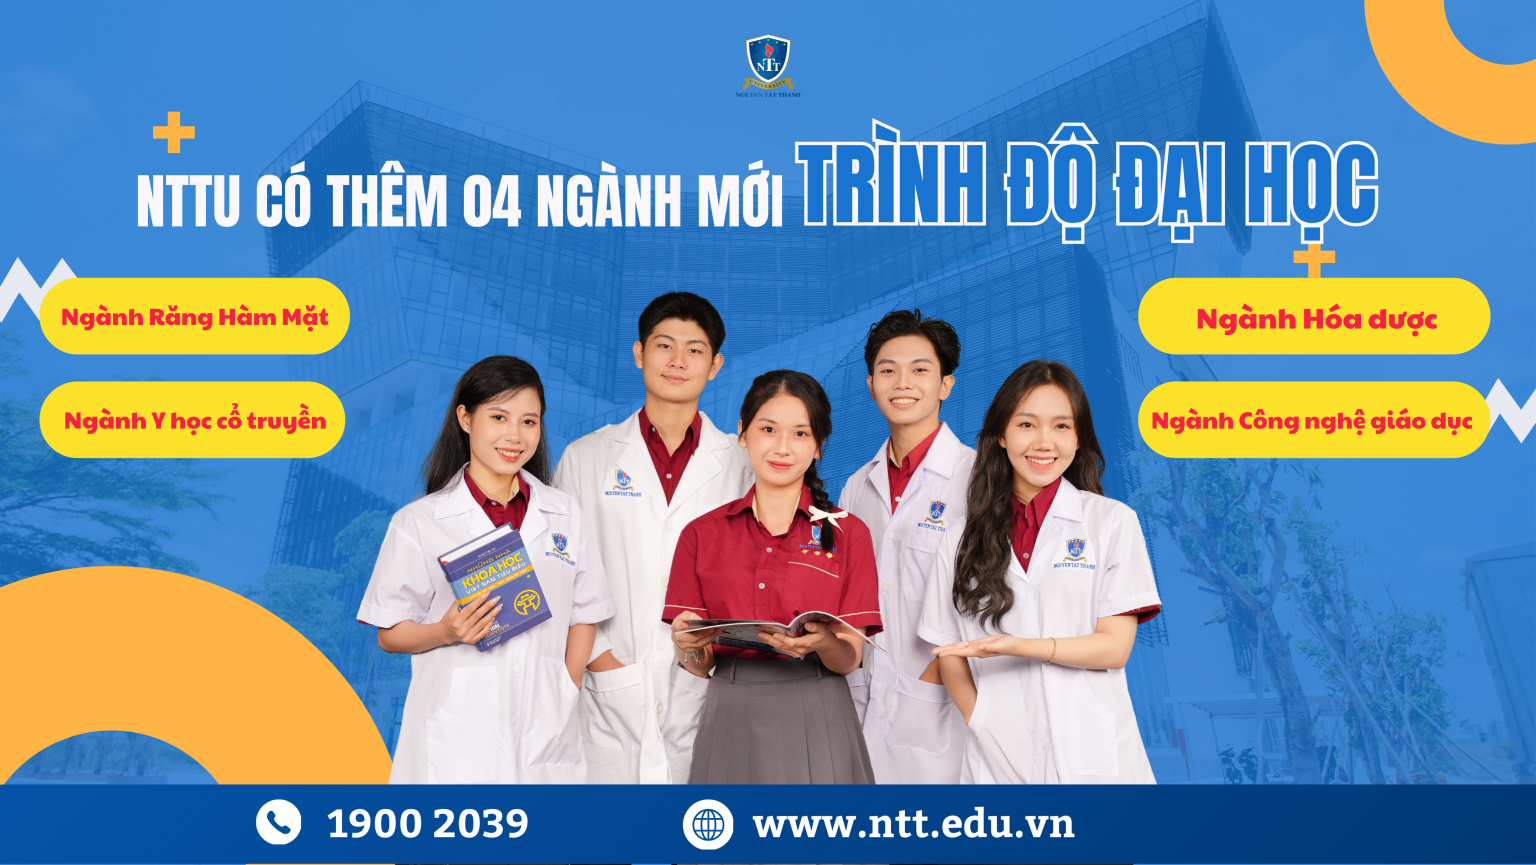 Trường ĐH Nguyễn Tất Thành có thêm 04 ngành mới về lĩnh vực giáo dục, khoa học và sức khỏe